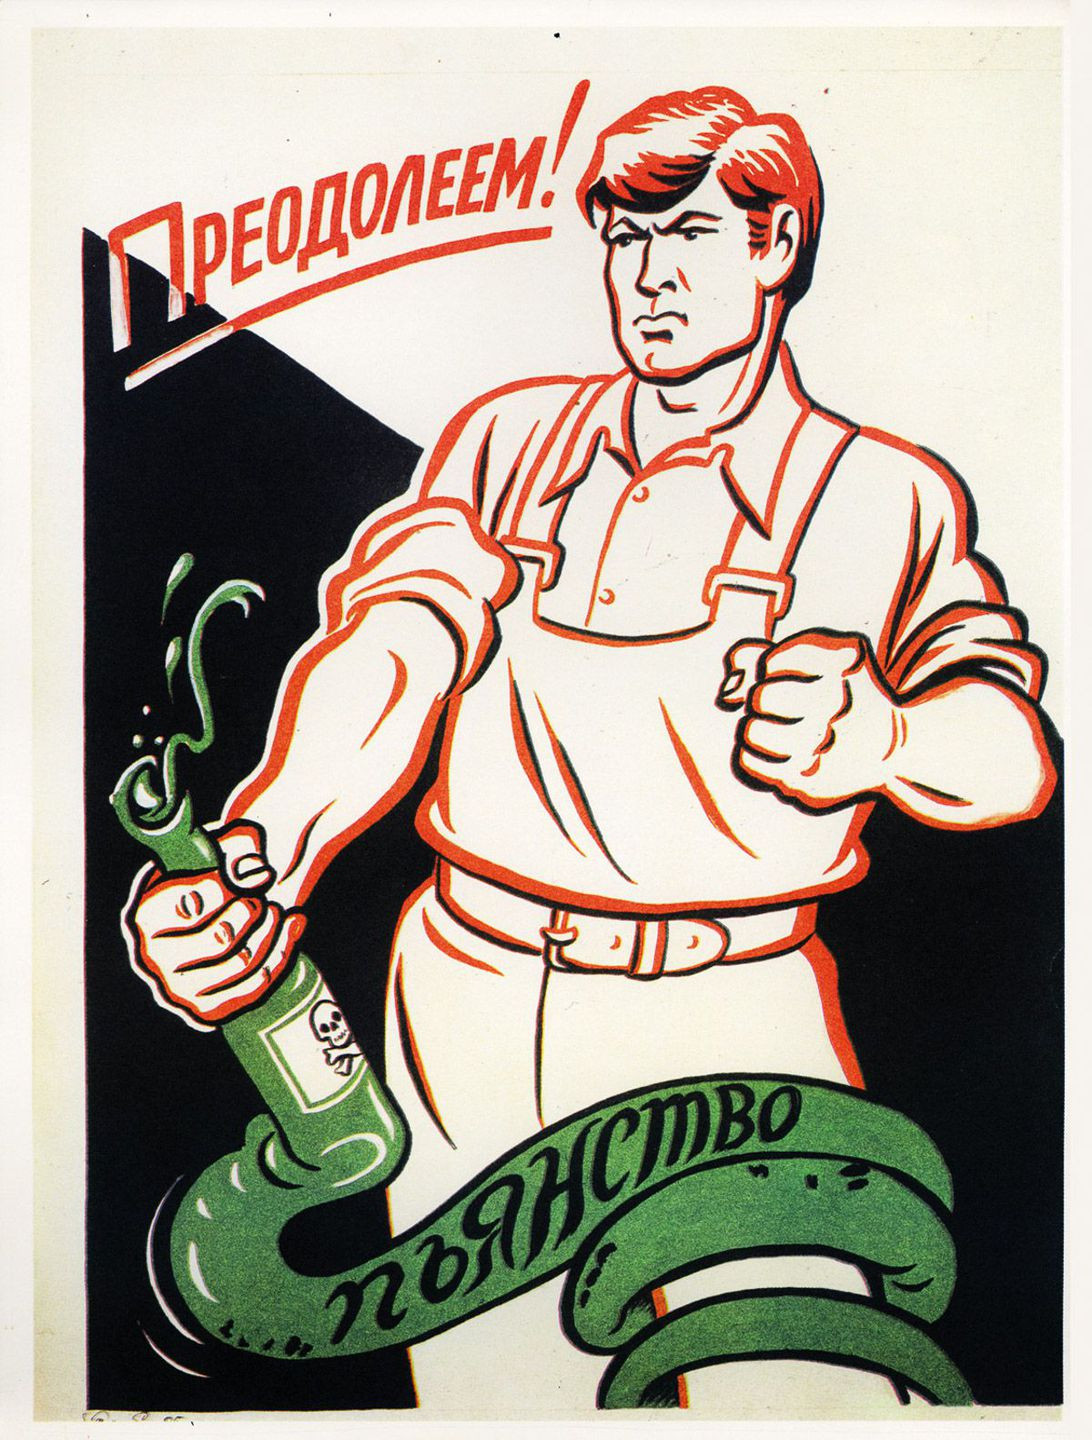 Na hadovi je nápis "Alkoholizmus" a plagát hlása "Porazíme ho!"